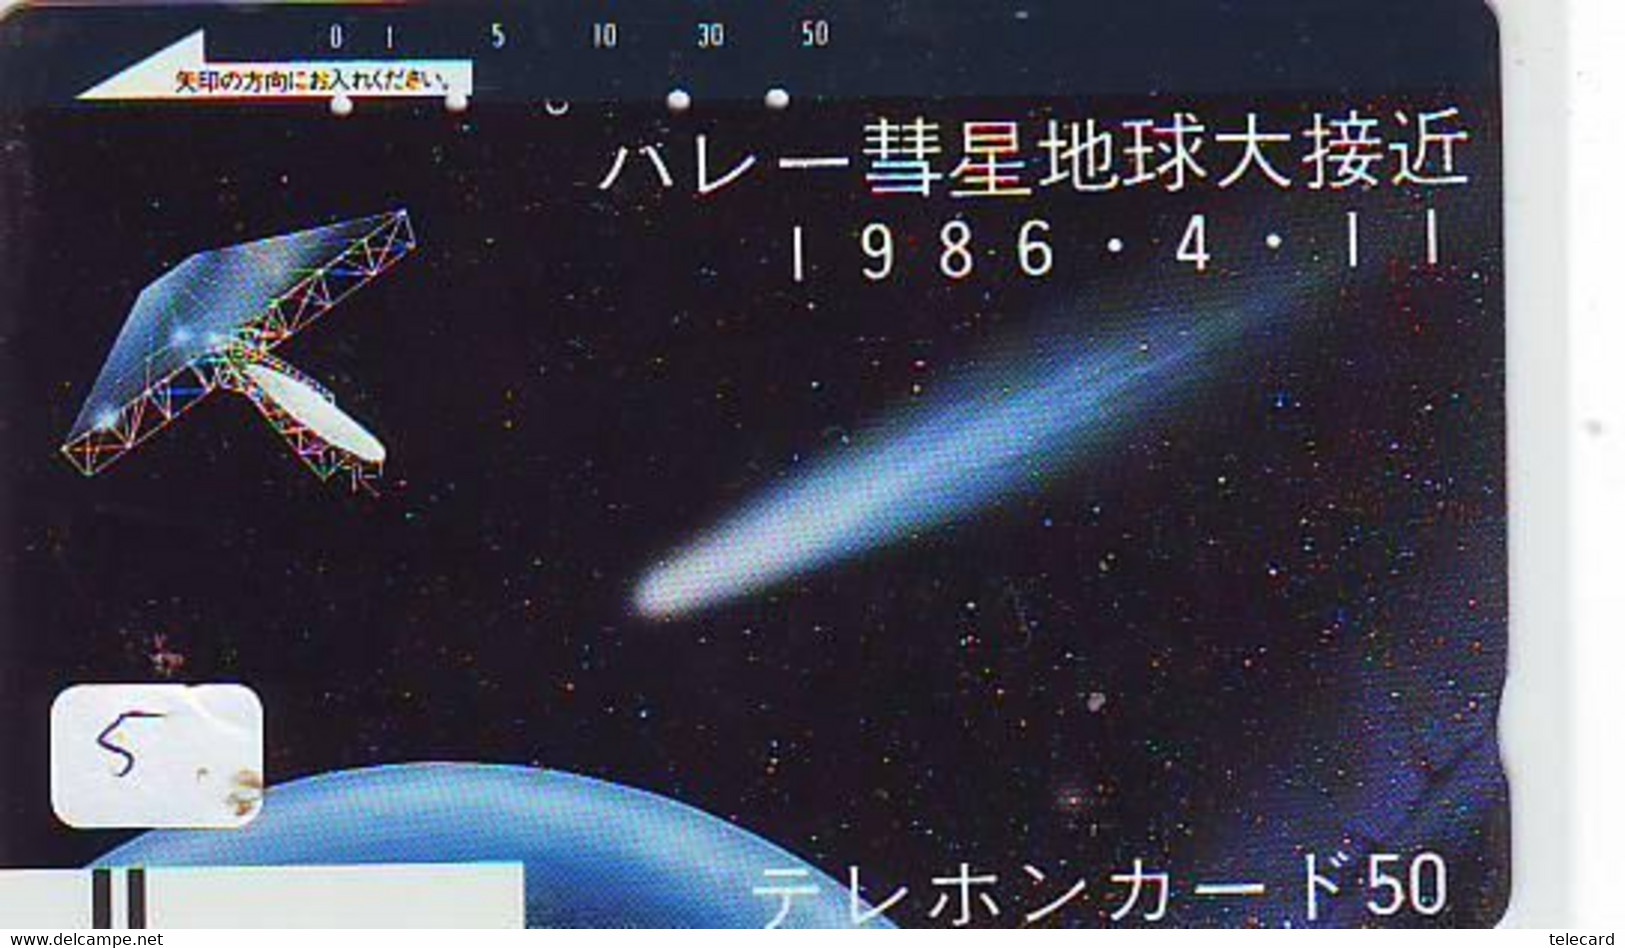 Télécarte COMET (5) COMETE-Japan SPACE * Espace * WELTRAUM *UNIVERSE* PLANET* BALKEN* 110-4408 - Astronomie